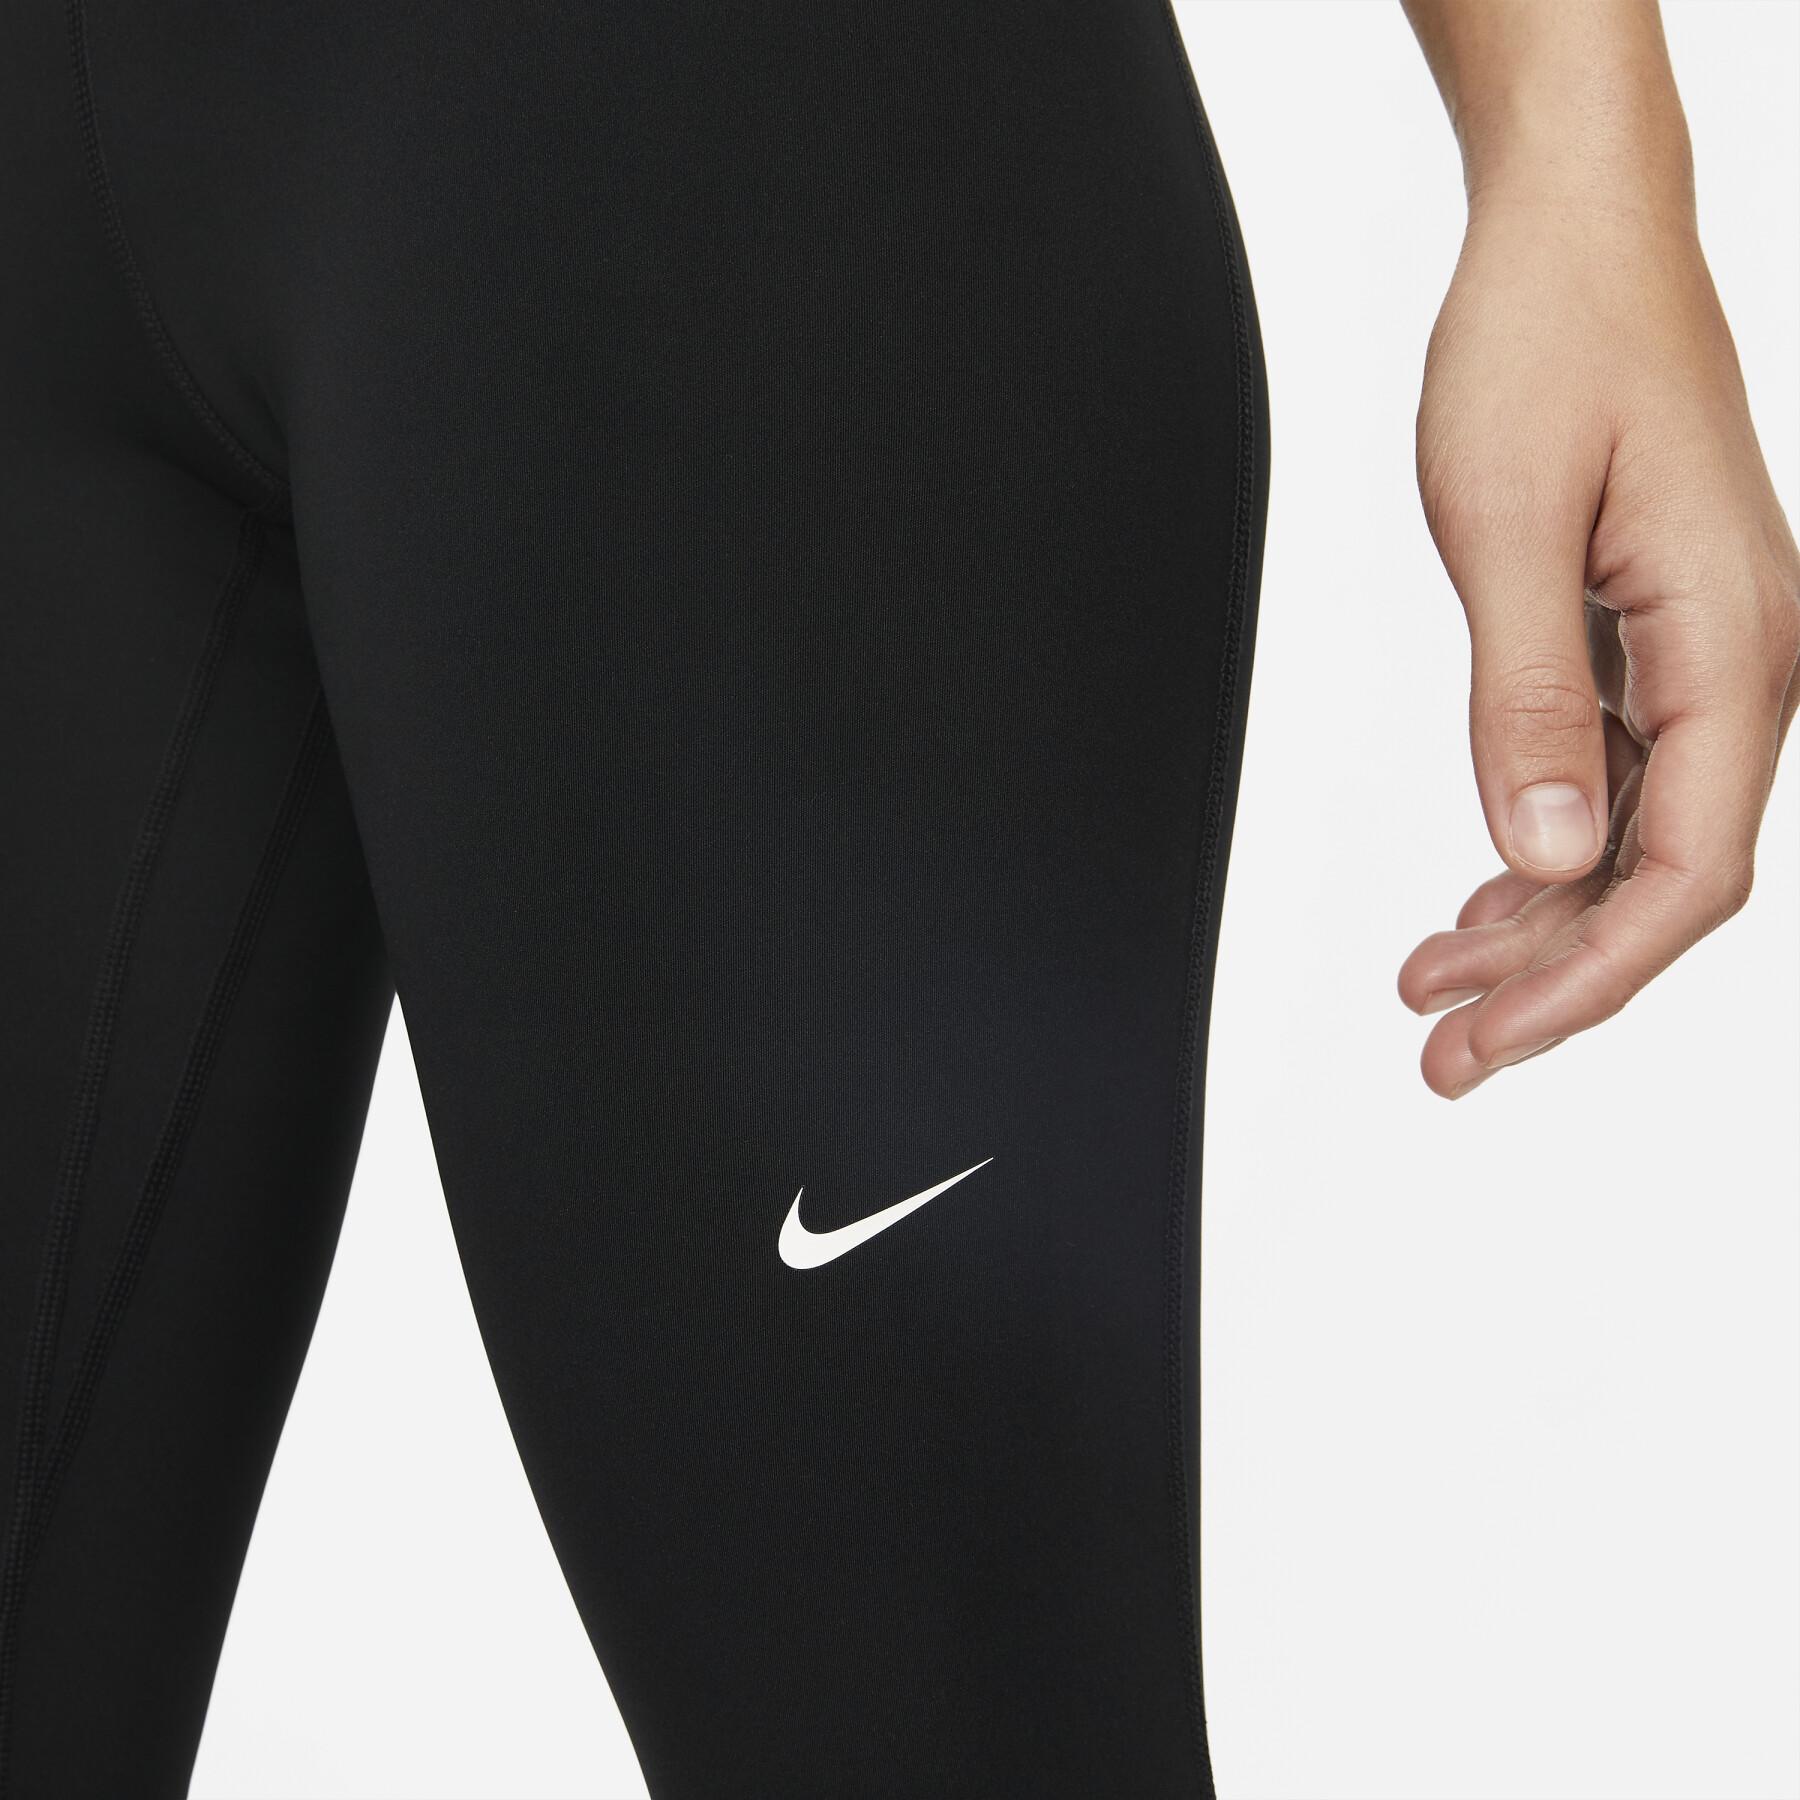 Legging woman Nike Pro 365 - Woman - Beach